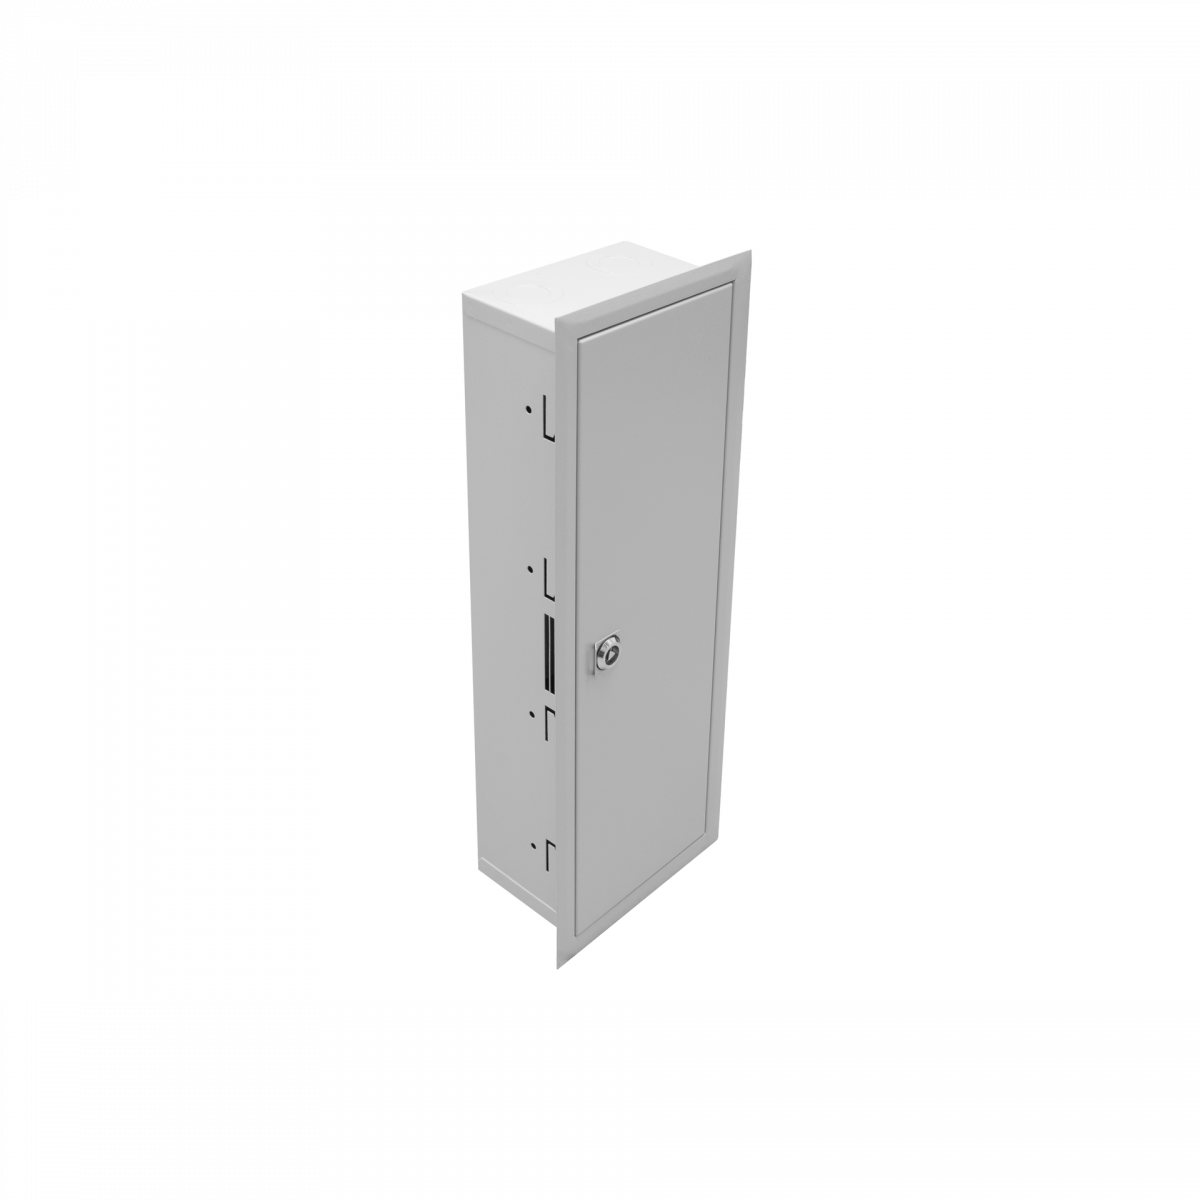 Универсальный настенный шкаф, встраиваемый, монтажная площадка, 4 рейки DIN 35 (21 место)